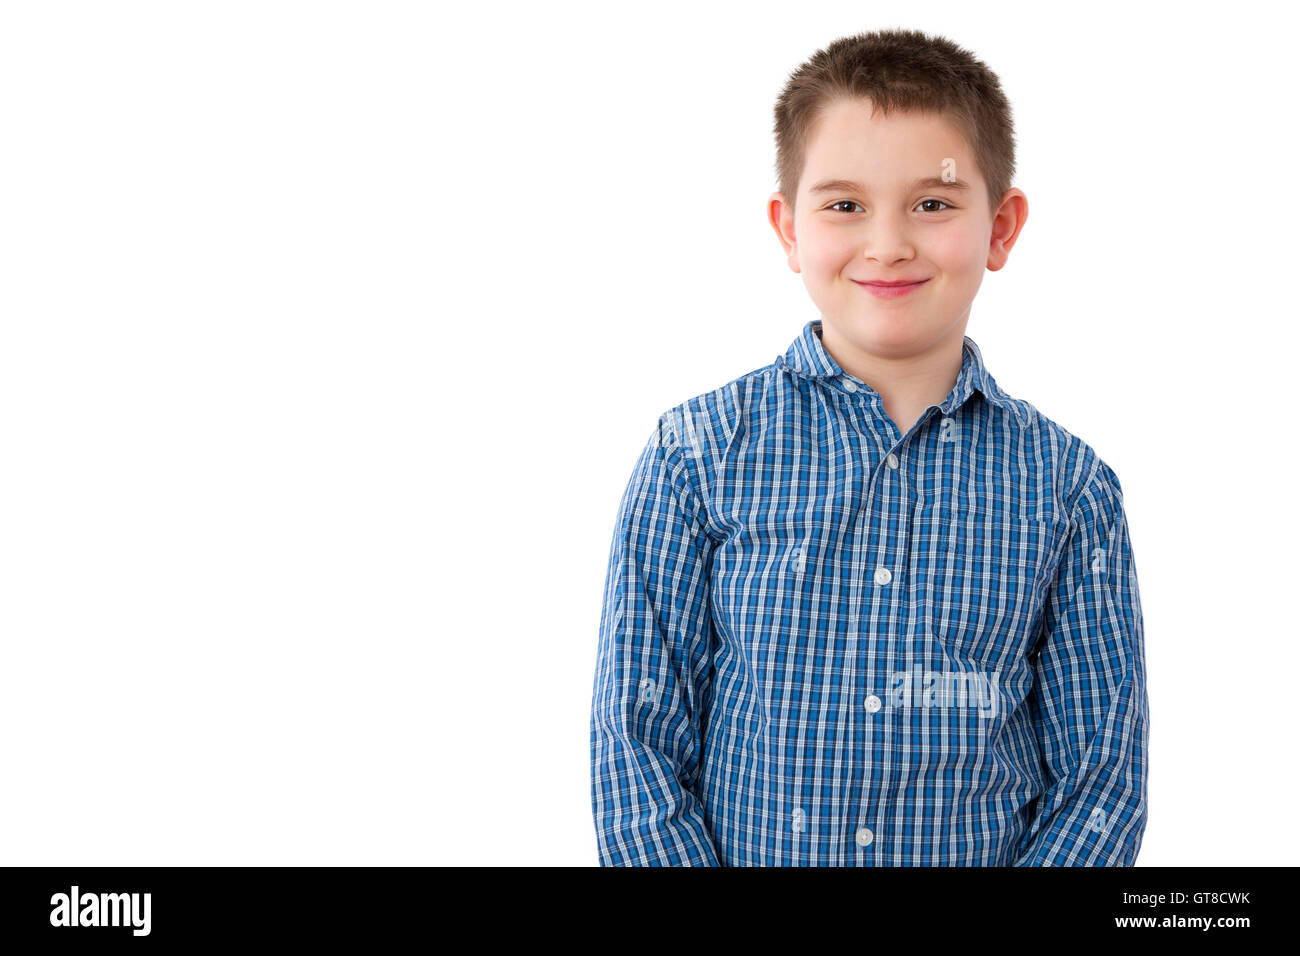 Porträt eines niedlichen 10 Jahre alten Jungen mit einem verschmitzten Lächeln süß, vor weißem Hintergrund mit textfreiraum stehen. Stockfoto